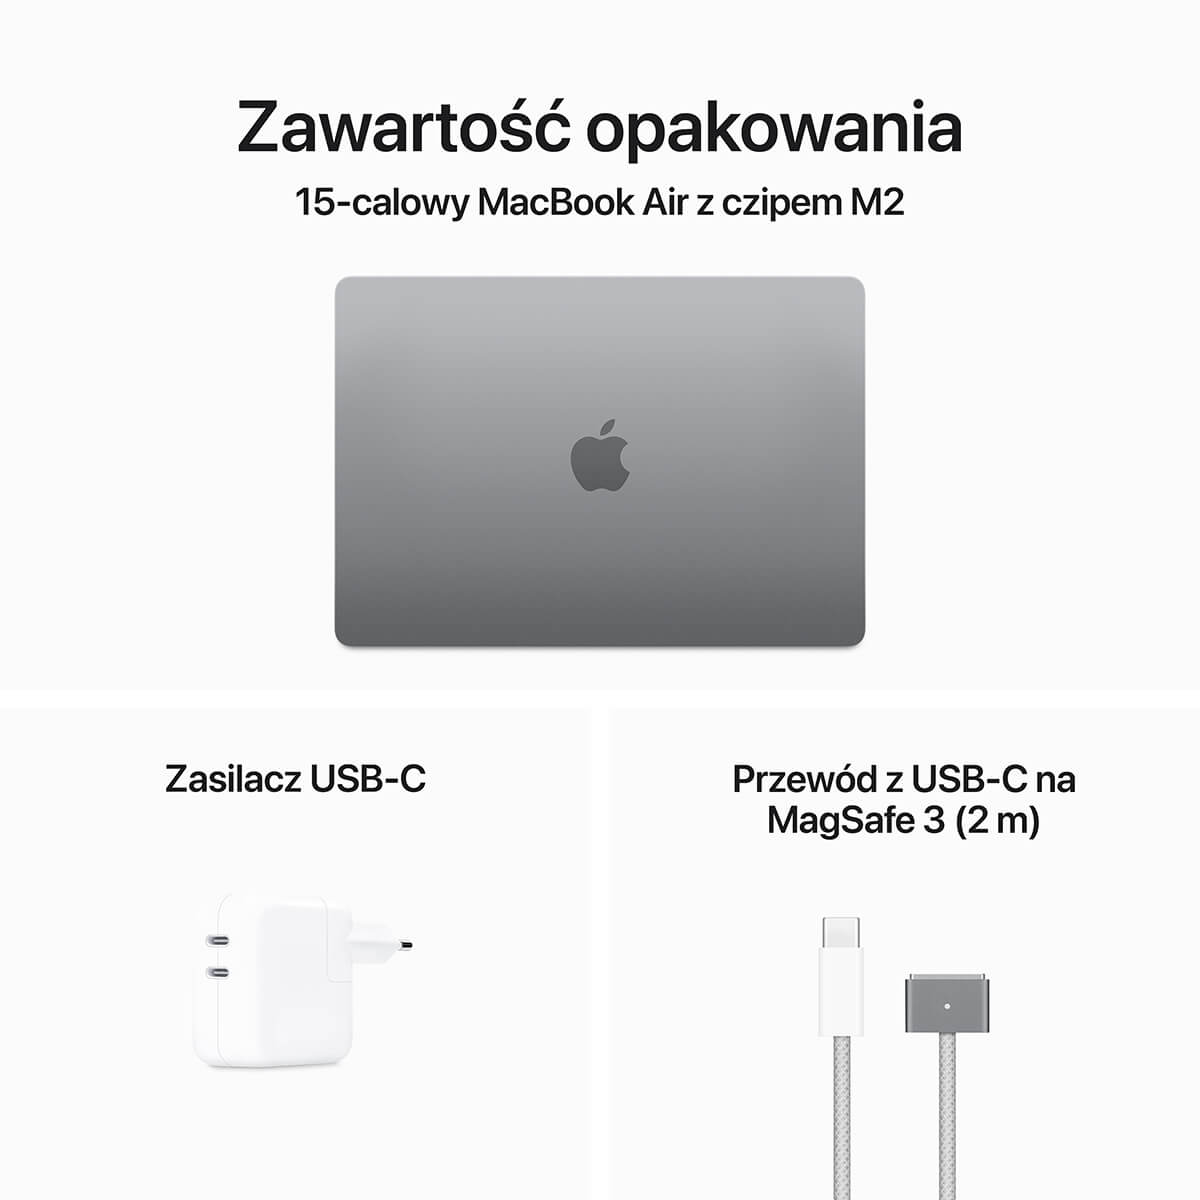 MacBook Air 15 cali M2 Zawartość opakowania